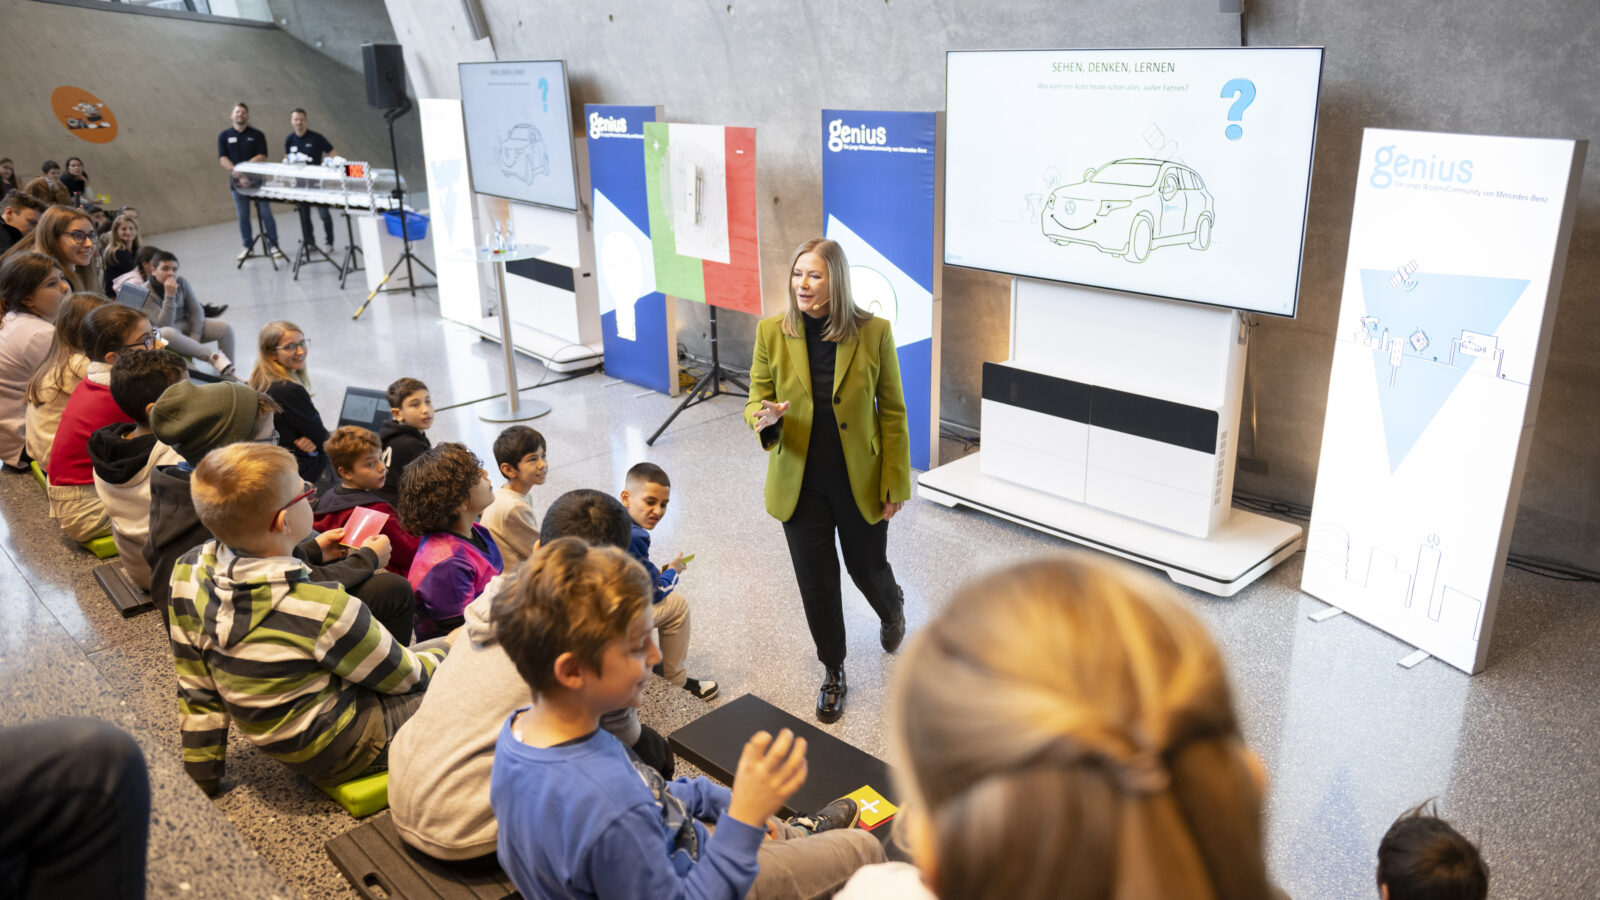 Sabine Kohleisen, die Referentin der Genius Kinderuni, steht auf der Bühne und redet mit den zuschauenden Kindern.